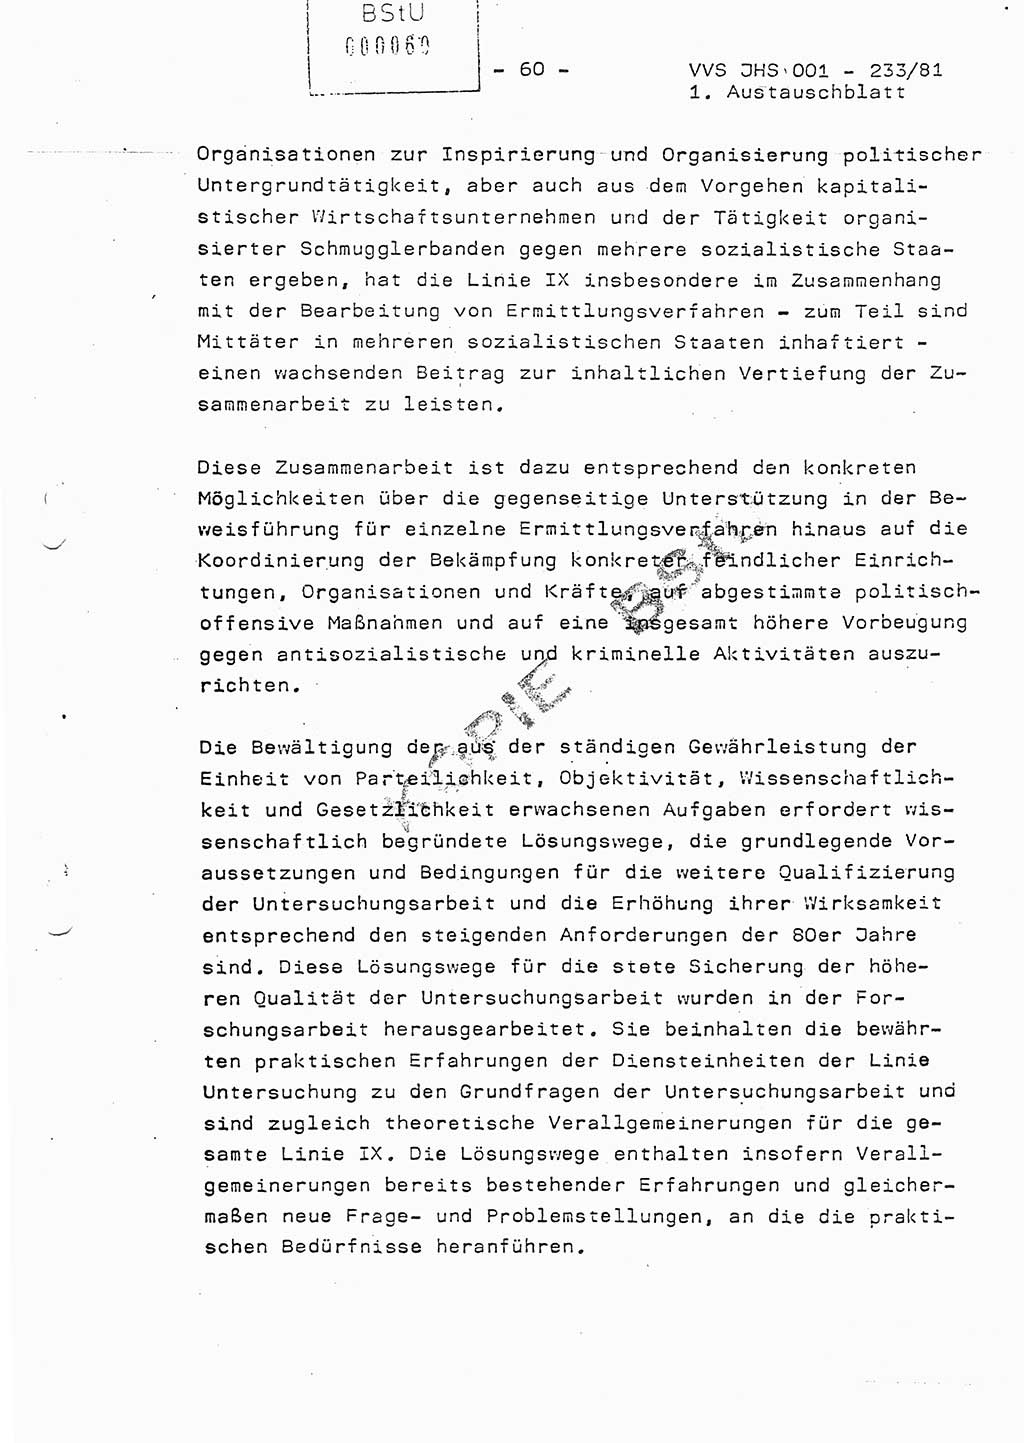 Dissertation Oberstleutnant Horst Zank (JHS), Oberstleutnant Dr. Karl-Heinz Knoblauch (JHS), Oberstleutnant Gustav-Adolf Kowalewski (HA Ⅸ), Oberstleutnant Wolfgang Plötner (HA Ⅸ), Ministerium für Staatssicherheit (MfS) [Deutsche Demokratische Republik (DDR)], Juristische Hochschule (JHS), Vertrauliche Verschlußsache (VVS) o001-233/81, Potsdam 1981, Blatt 60 (Diss. MfS DDR JHS VVS o001-233/81 1981, Bl. 60)